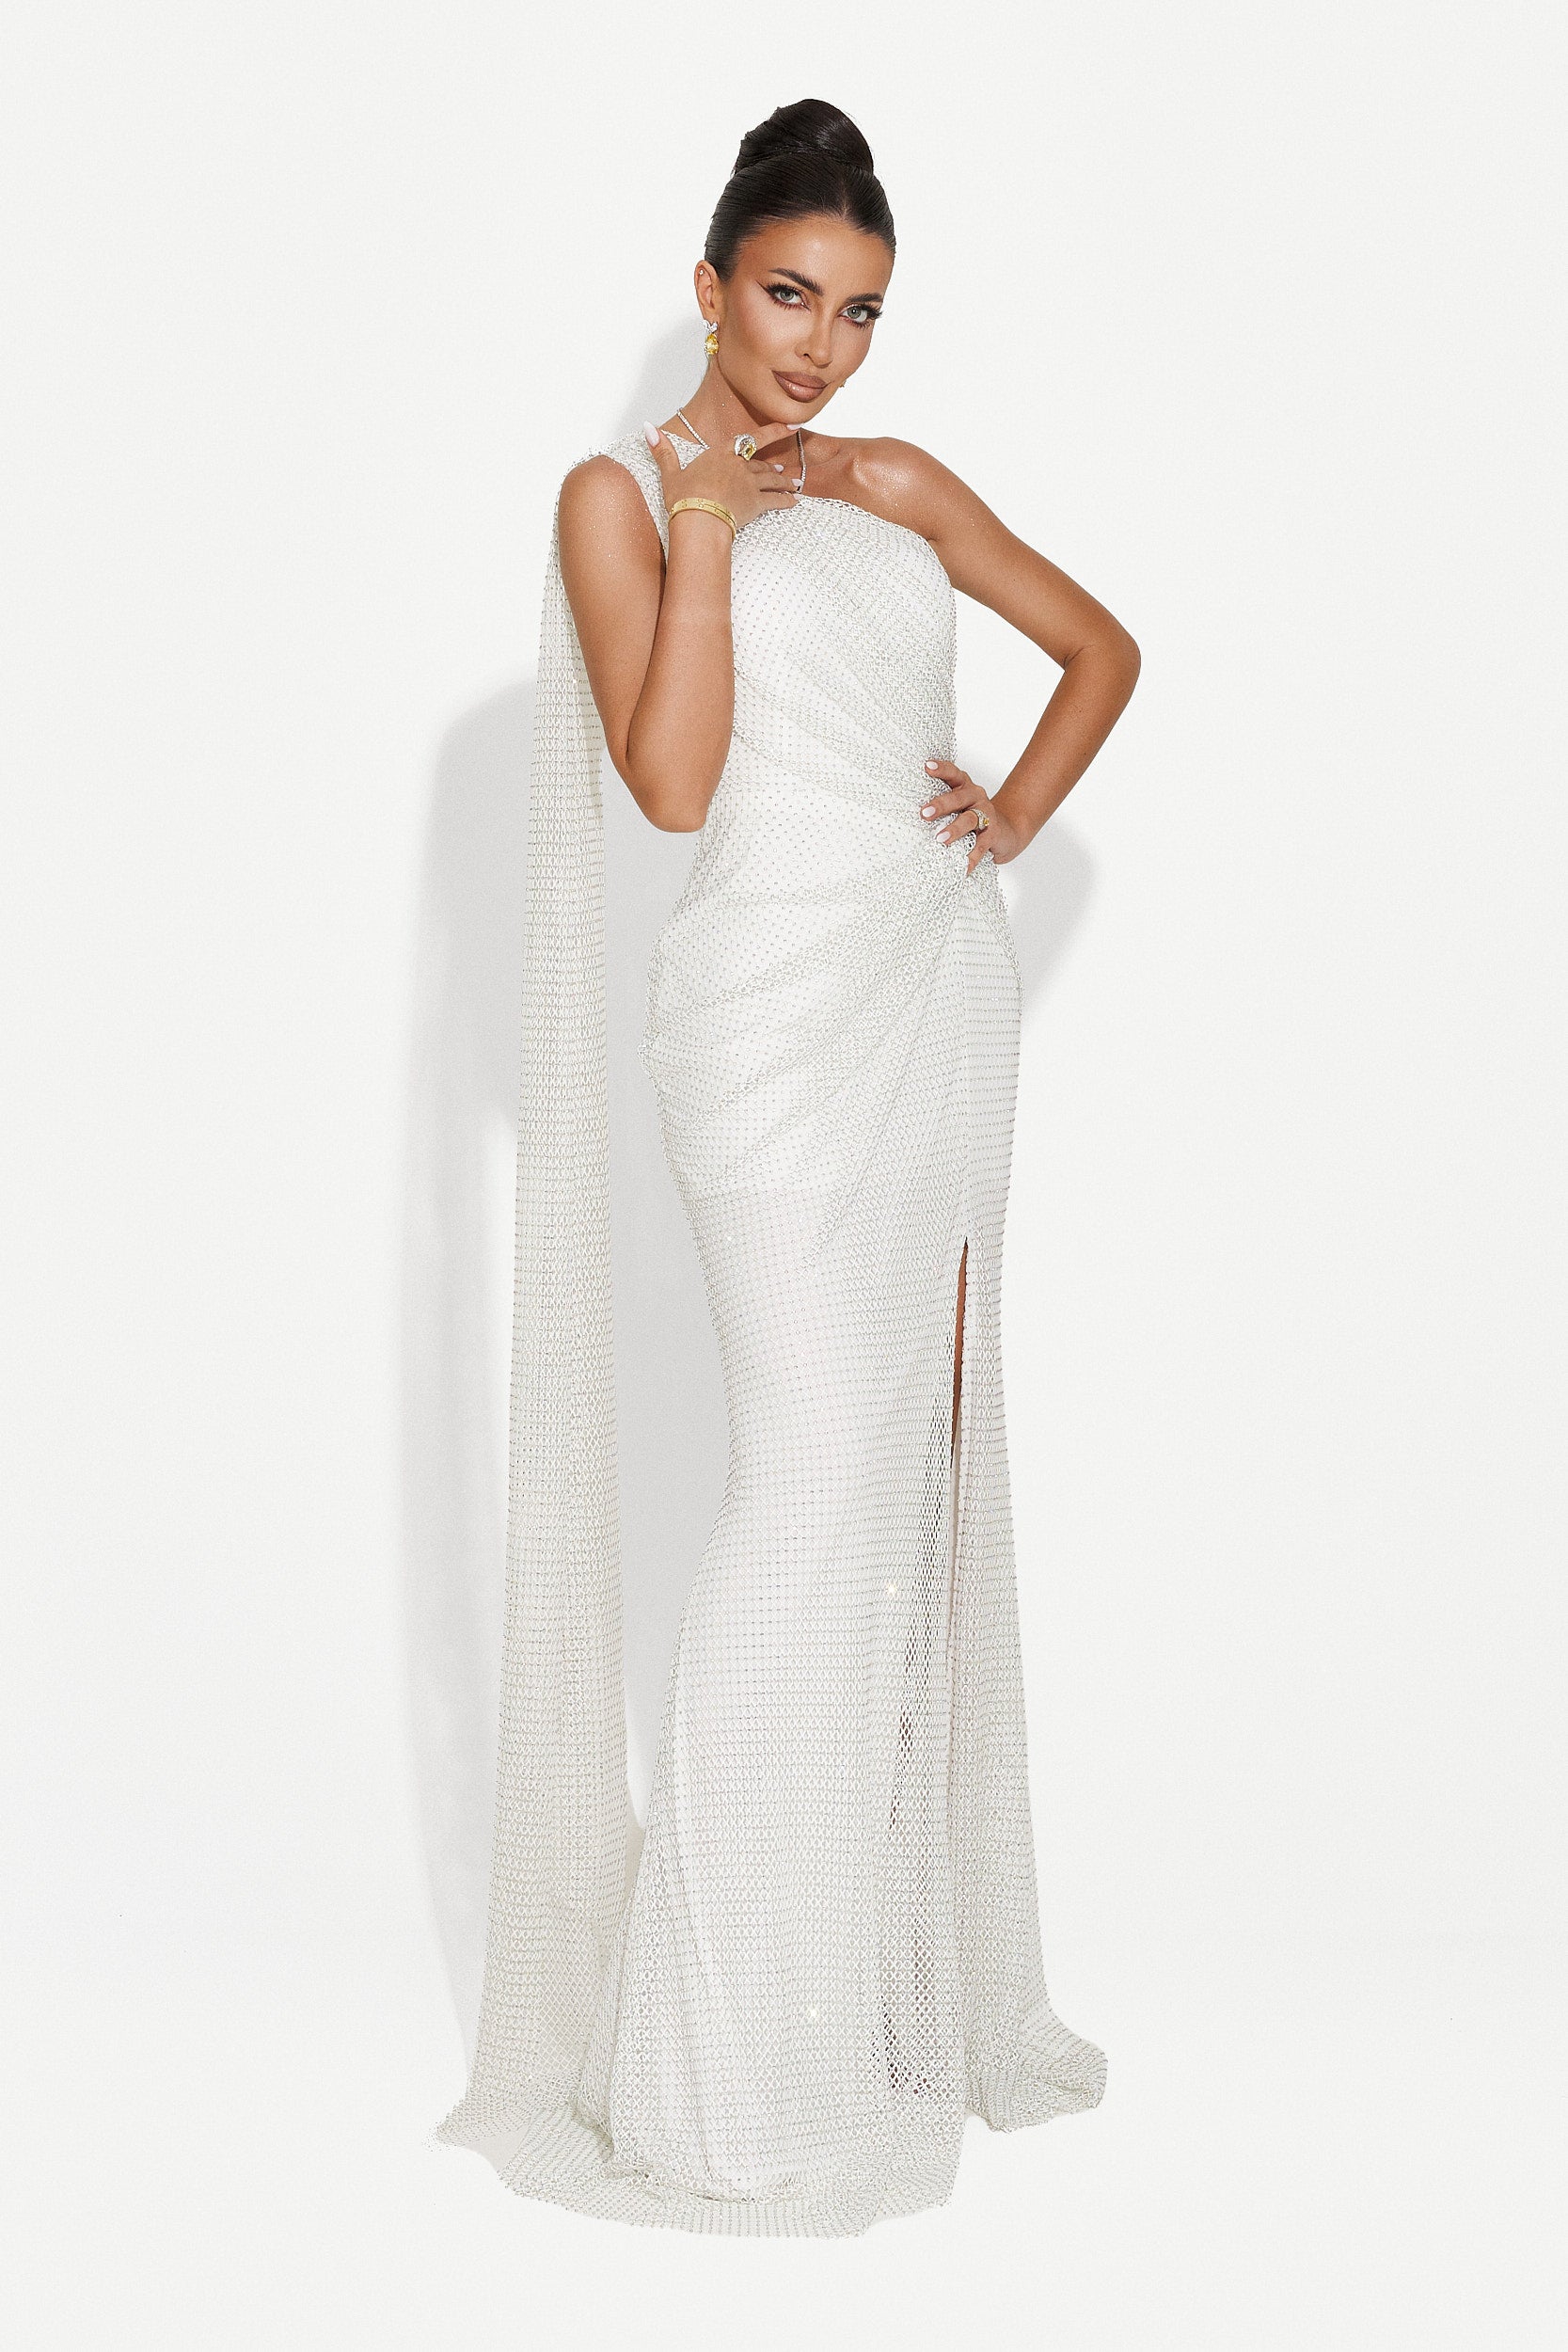 Casida Bogas hosszú fehér női ruha